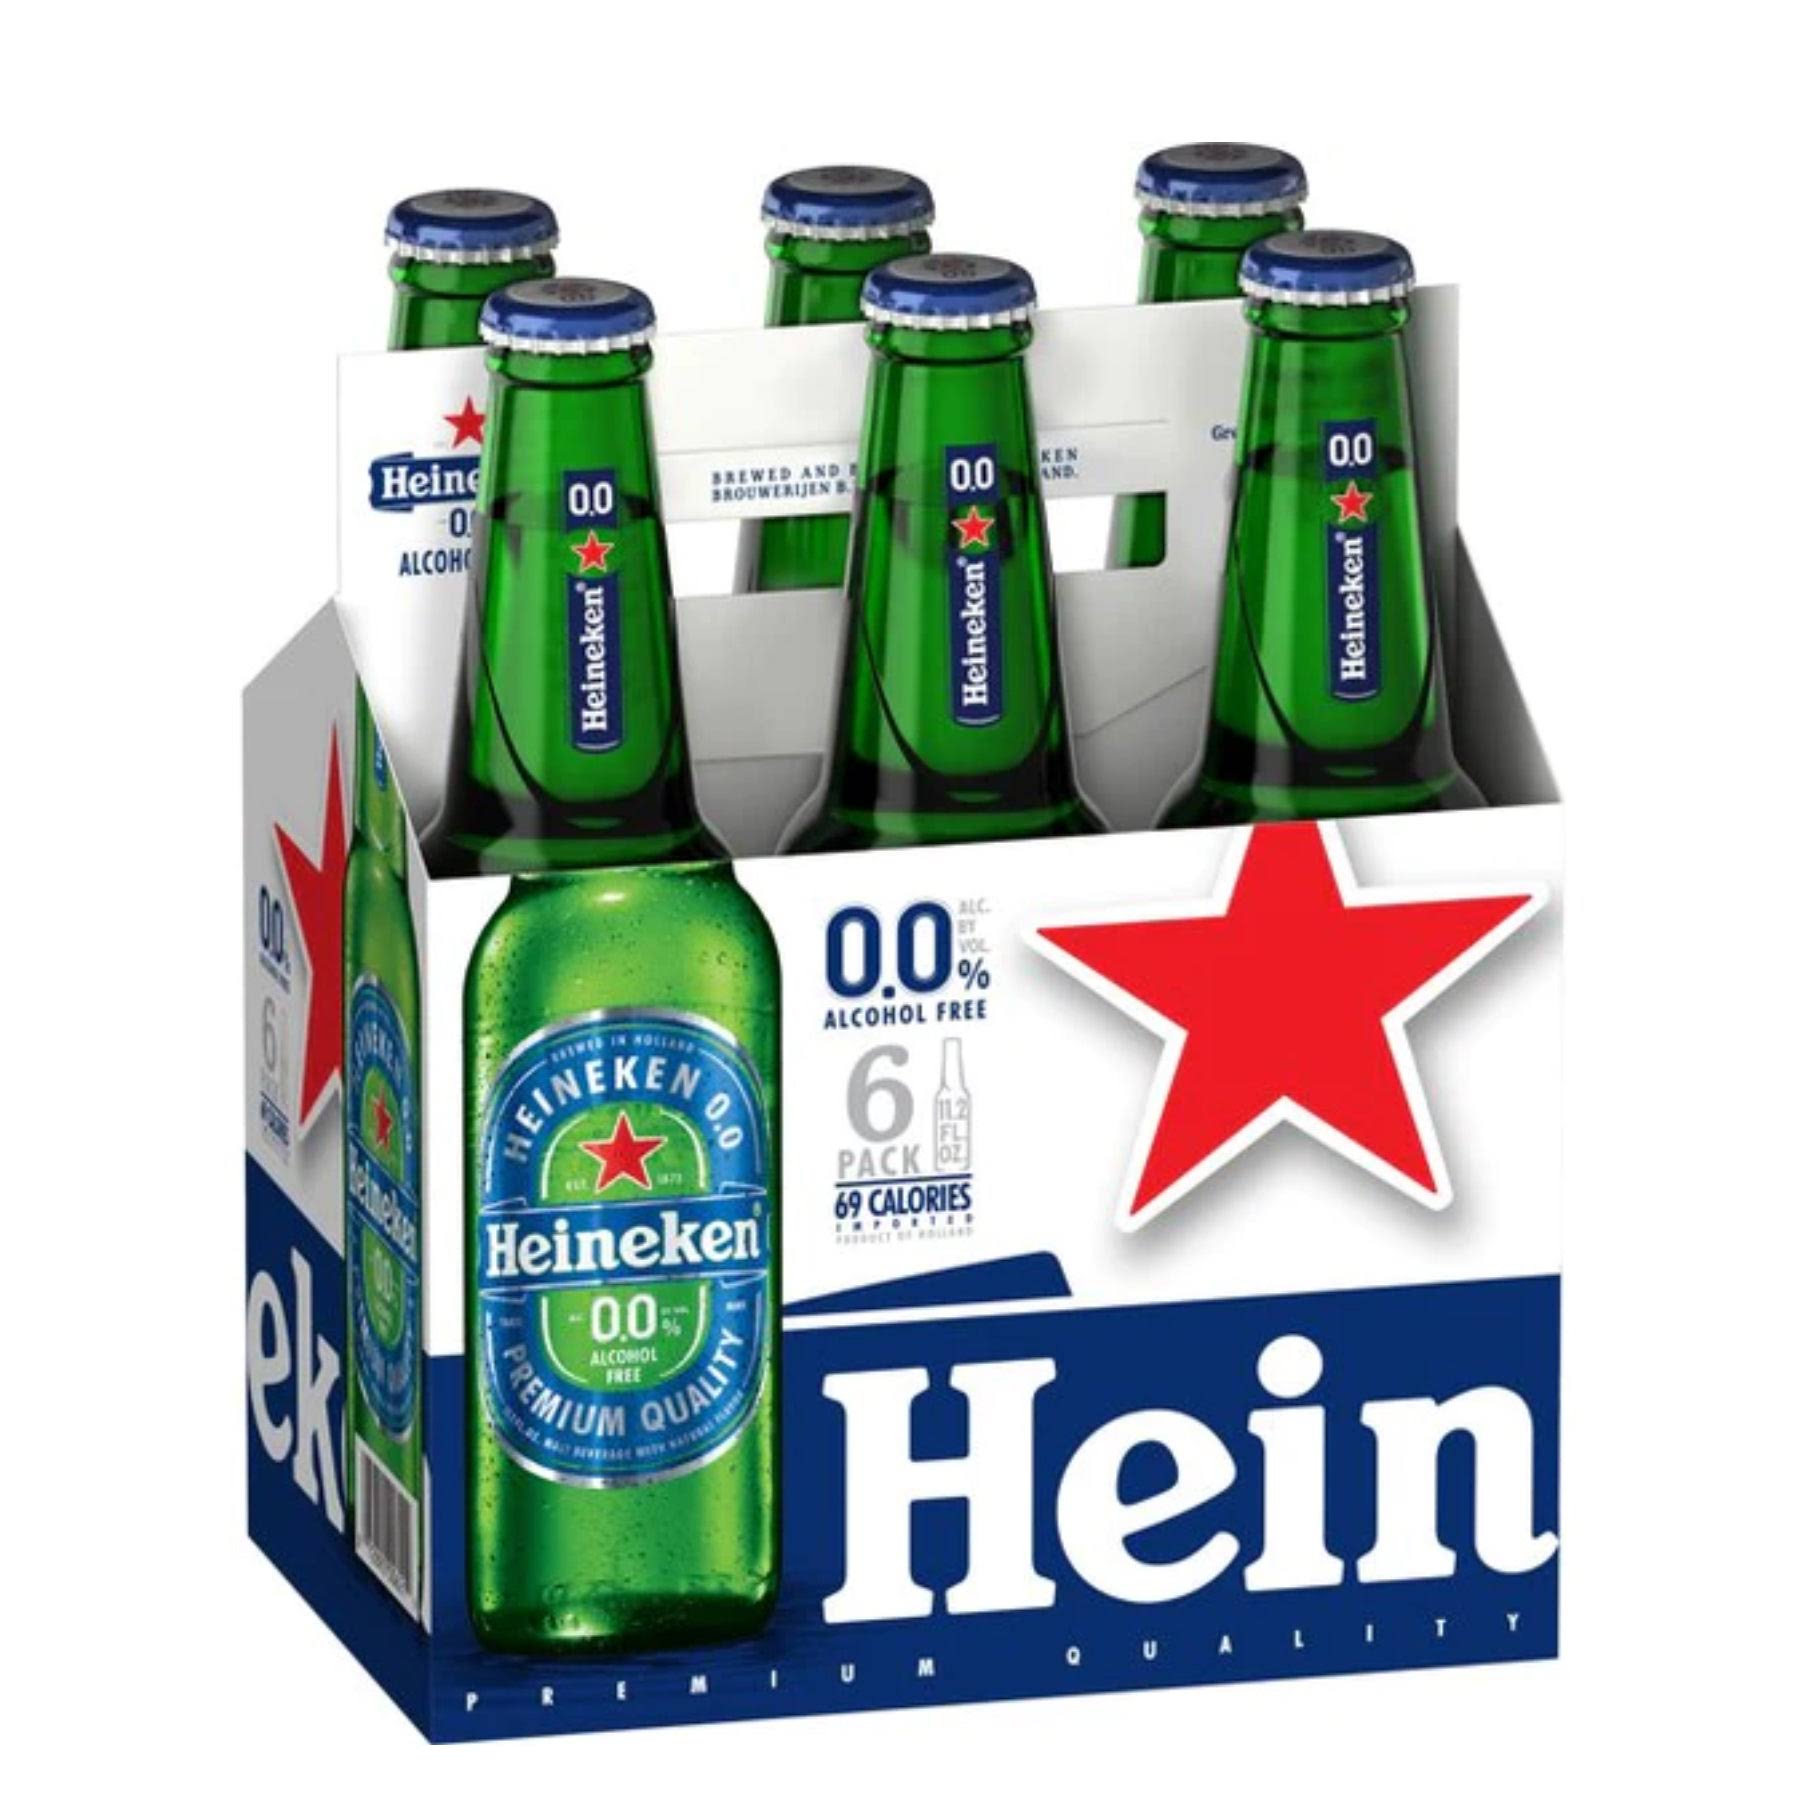 Heineken Beer, Alcohol Free, 6 Pack - 6 pack, 11.2 fl oz bottles